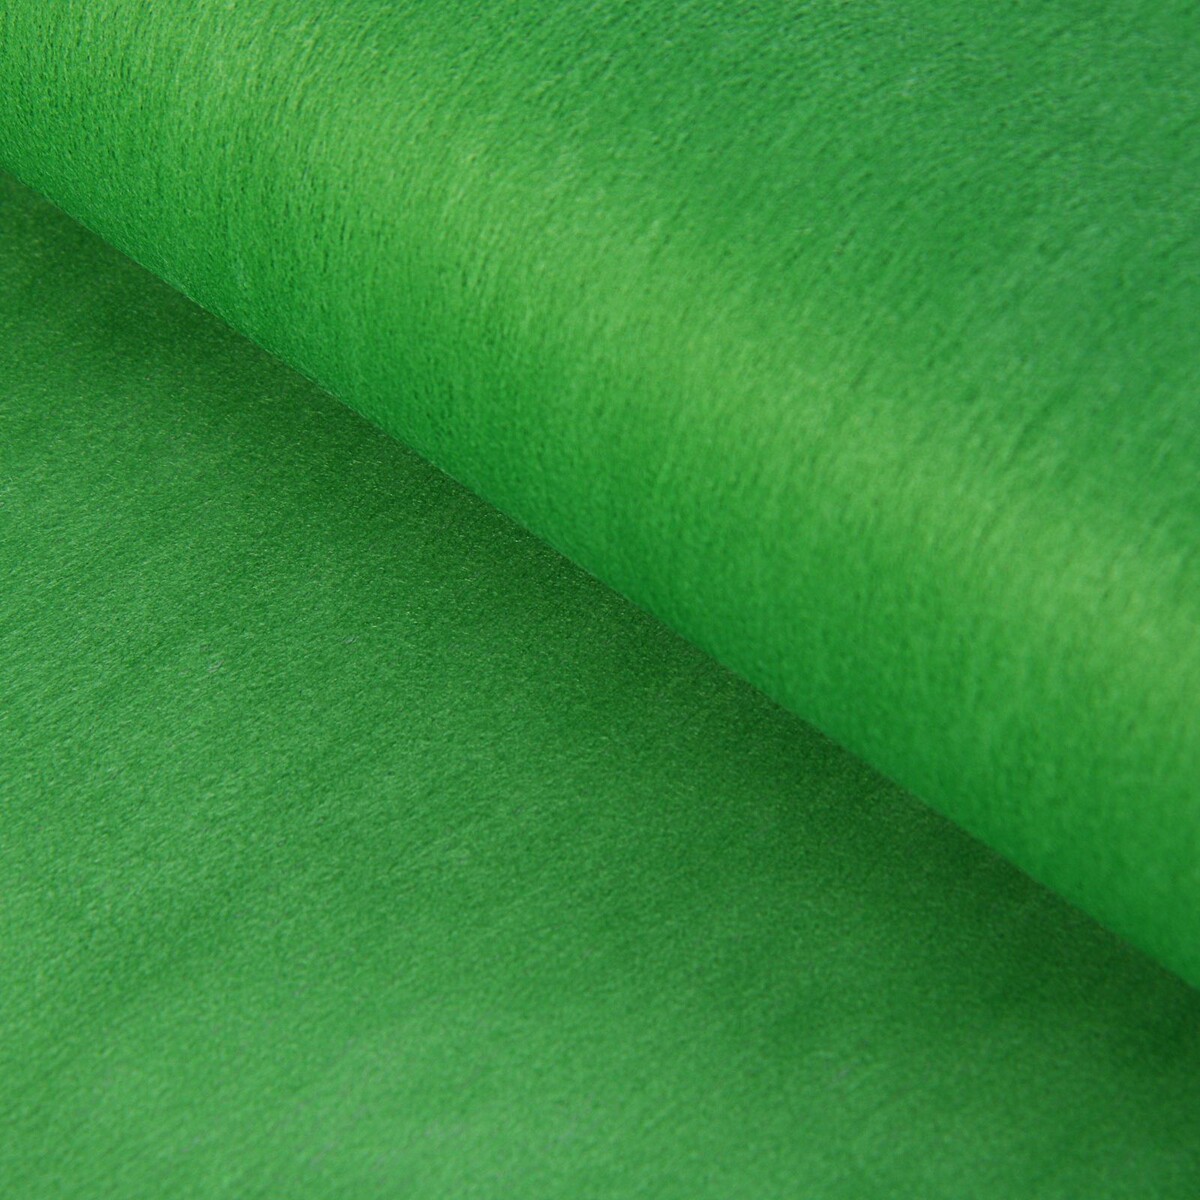 Фетр однотонный, зеленый, 50 см x 15 м фетр для упаковок и поделок однотонный оливковый двусторонний зеленый рулон 1шт 50 см x 15 м